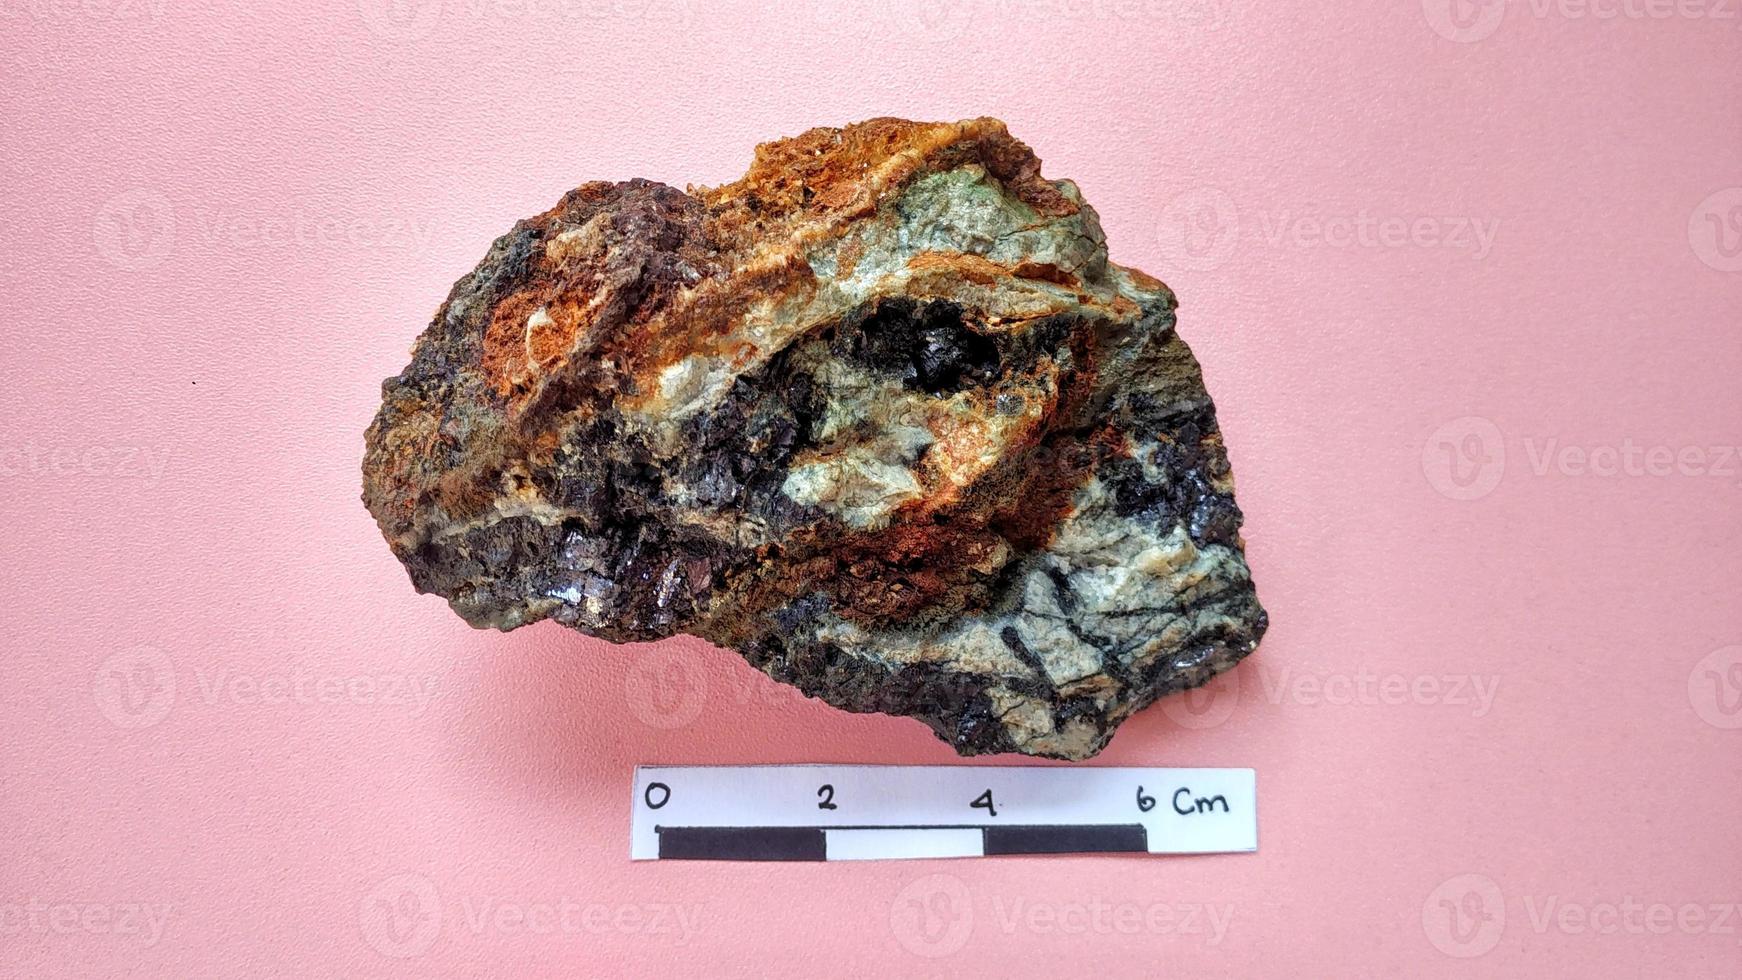 eruptiver Andesit, der in einer hydrothermalen Alterationszone alteriert ist, mit Erzgangquarz, Chlorit und glänzenden schwarzen Pyritmineralien auf einem rosa Hintergrund. Indonesien, geologische Erkundung. foto